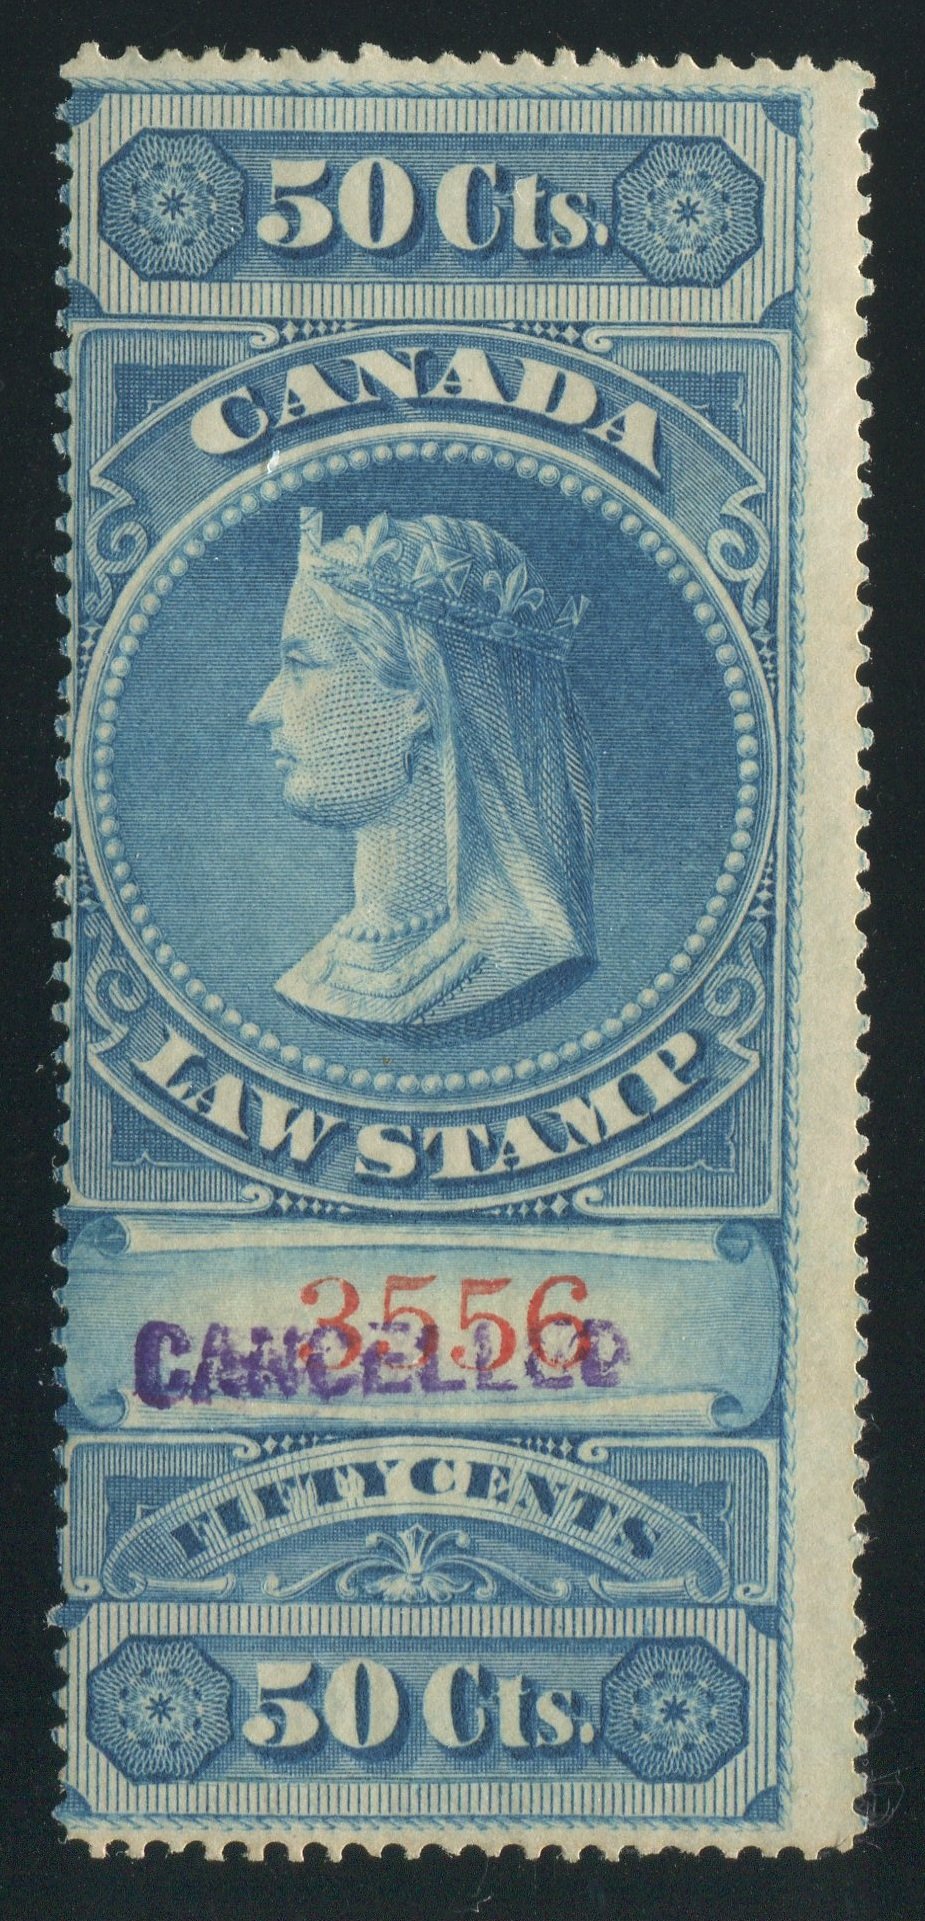 0004SC1710 - FSC4 - Specimen - Deveney Stamps Ltd. Canadian Stamps